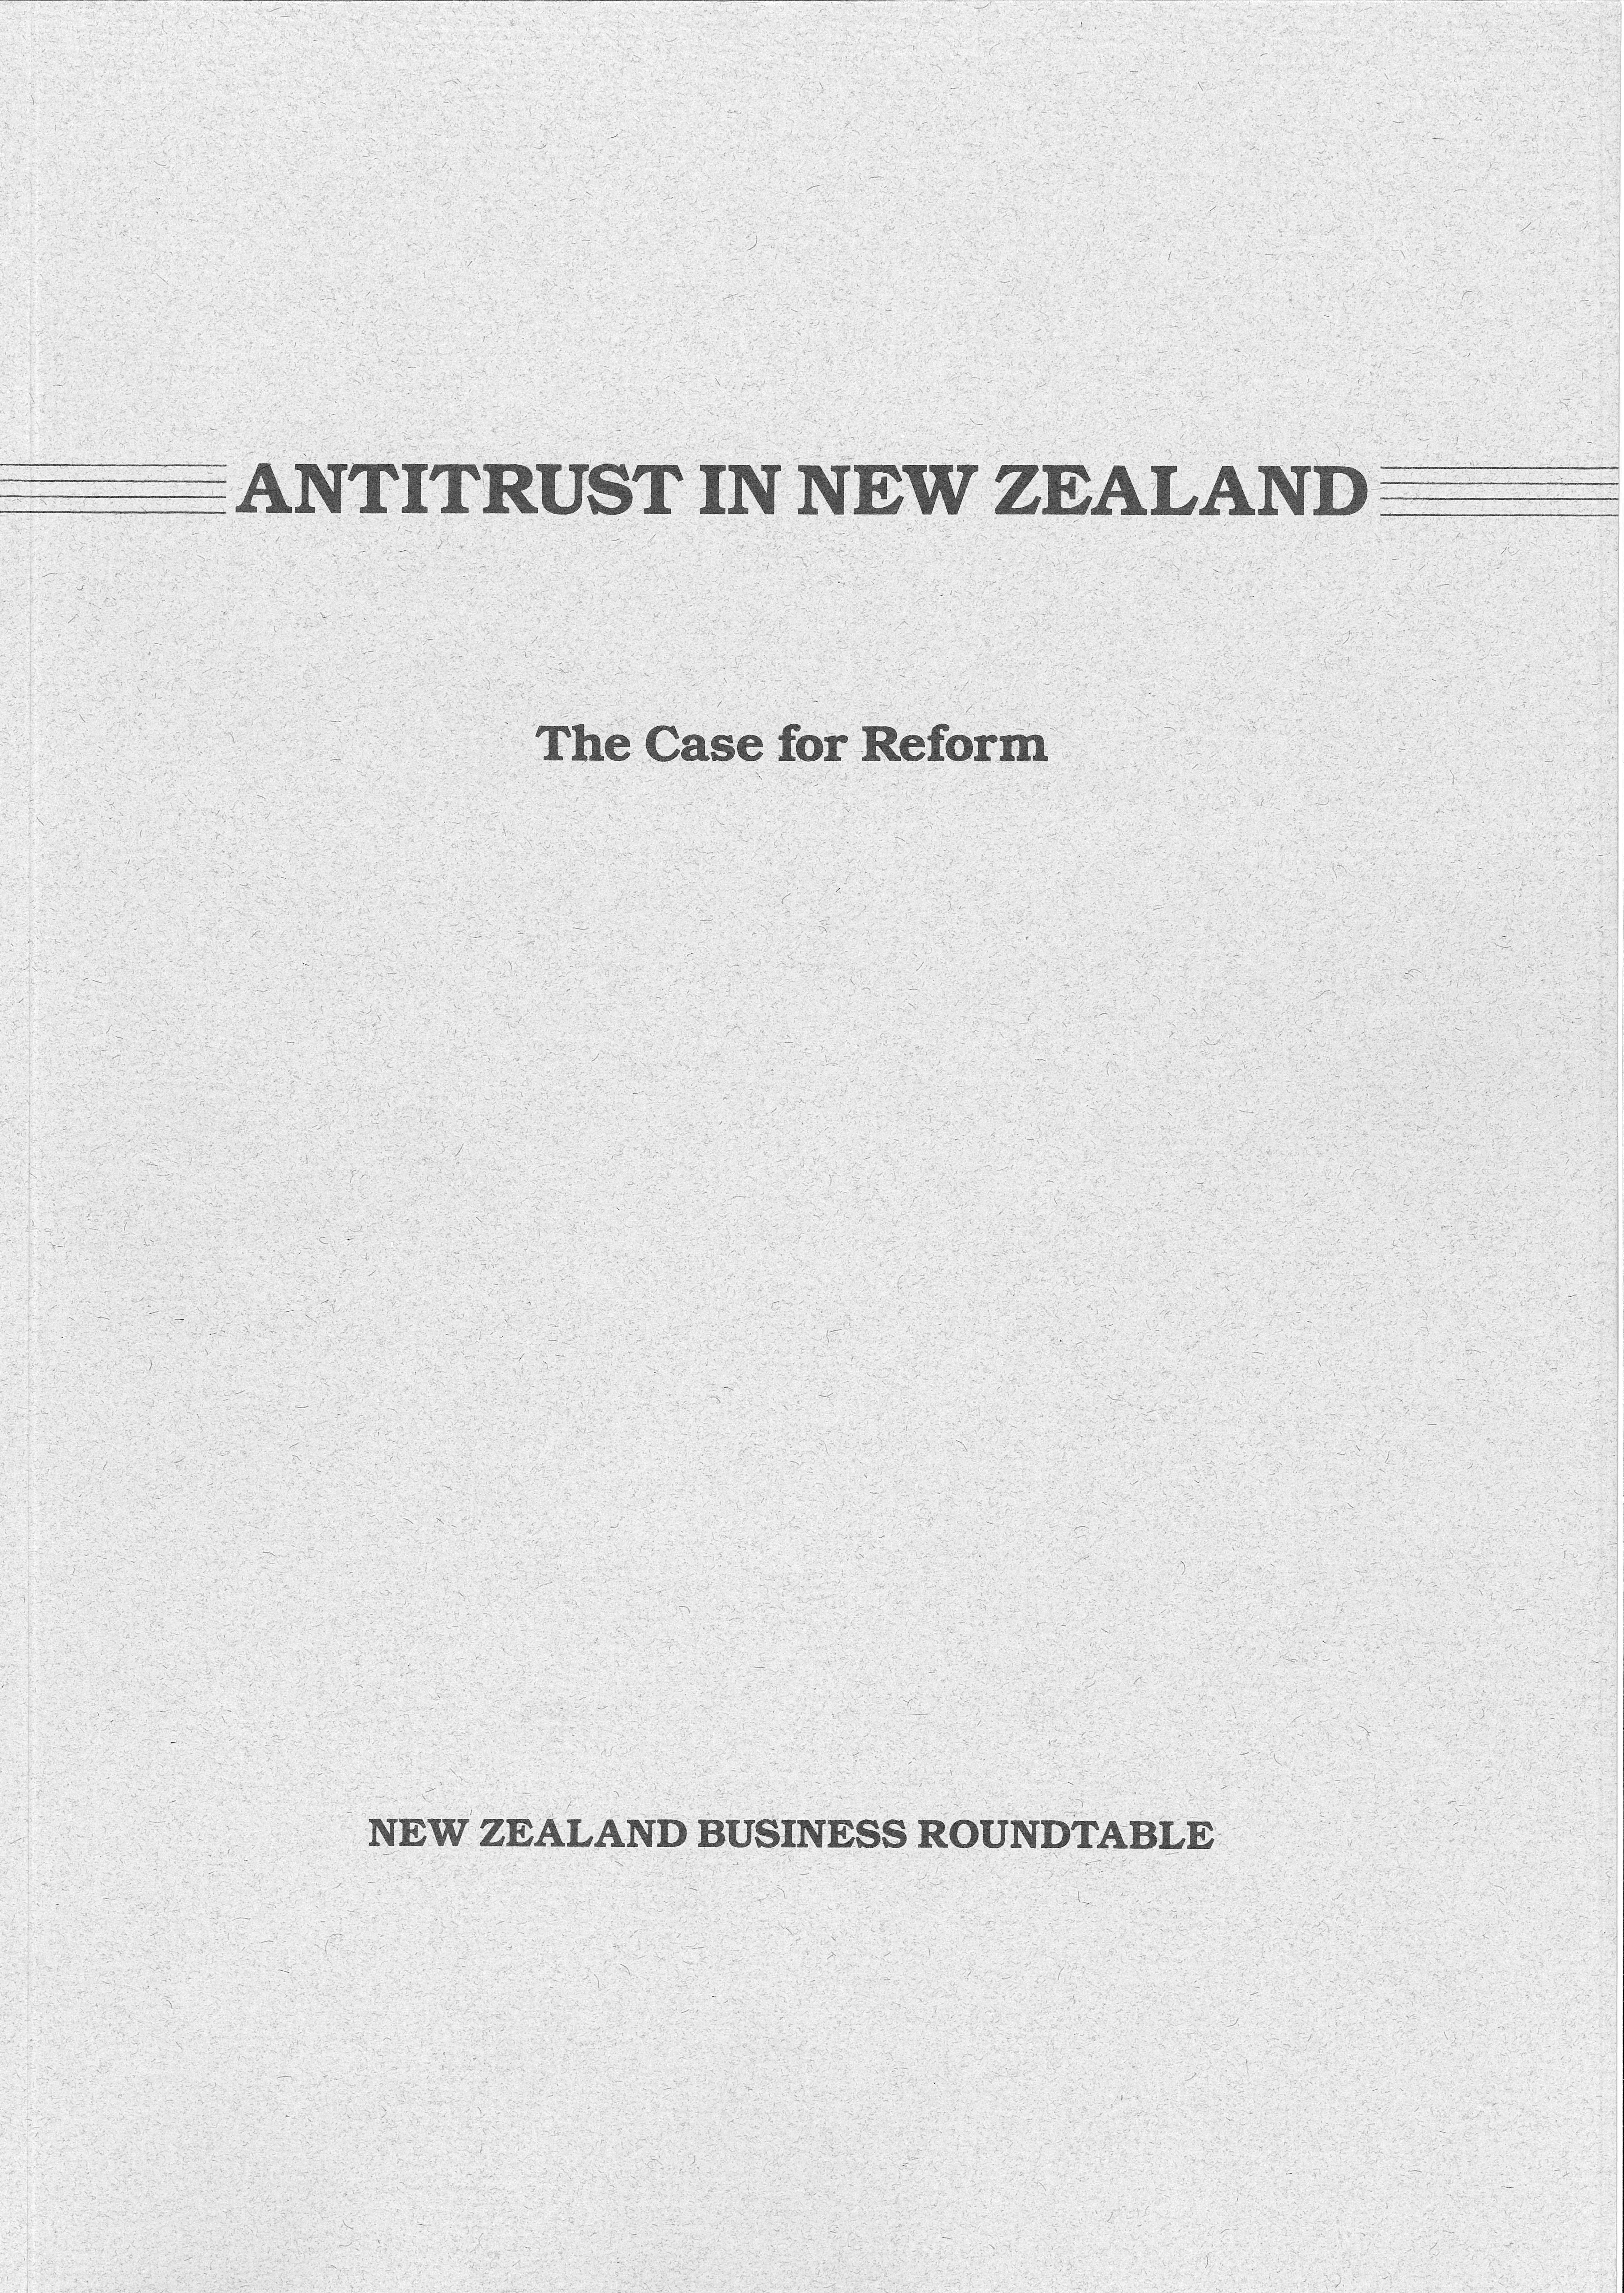 Antitrust cover